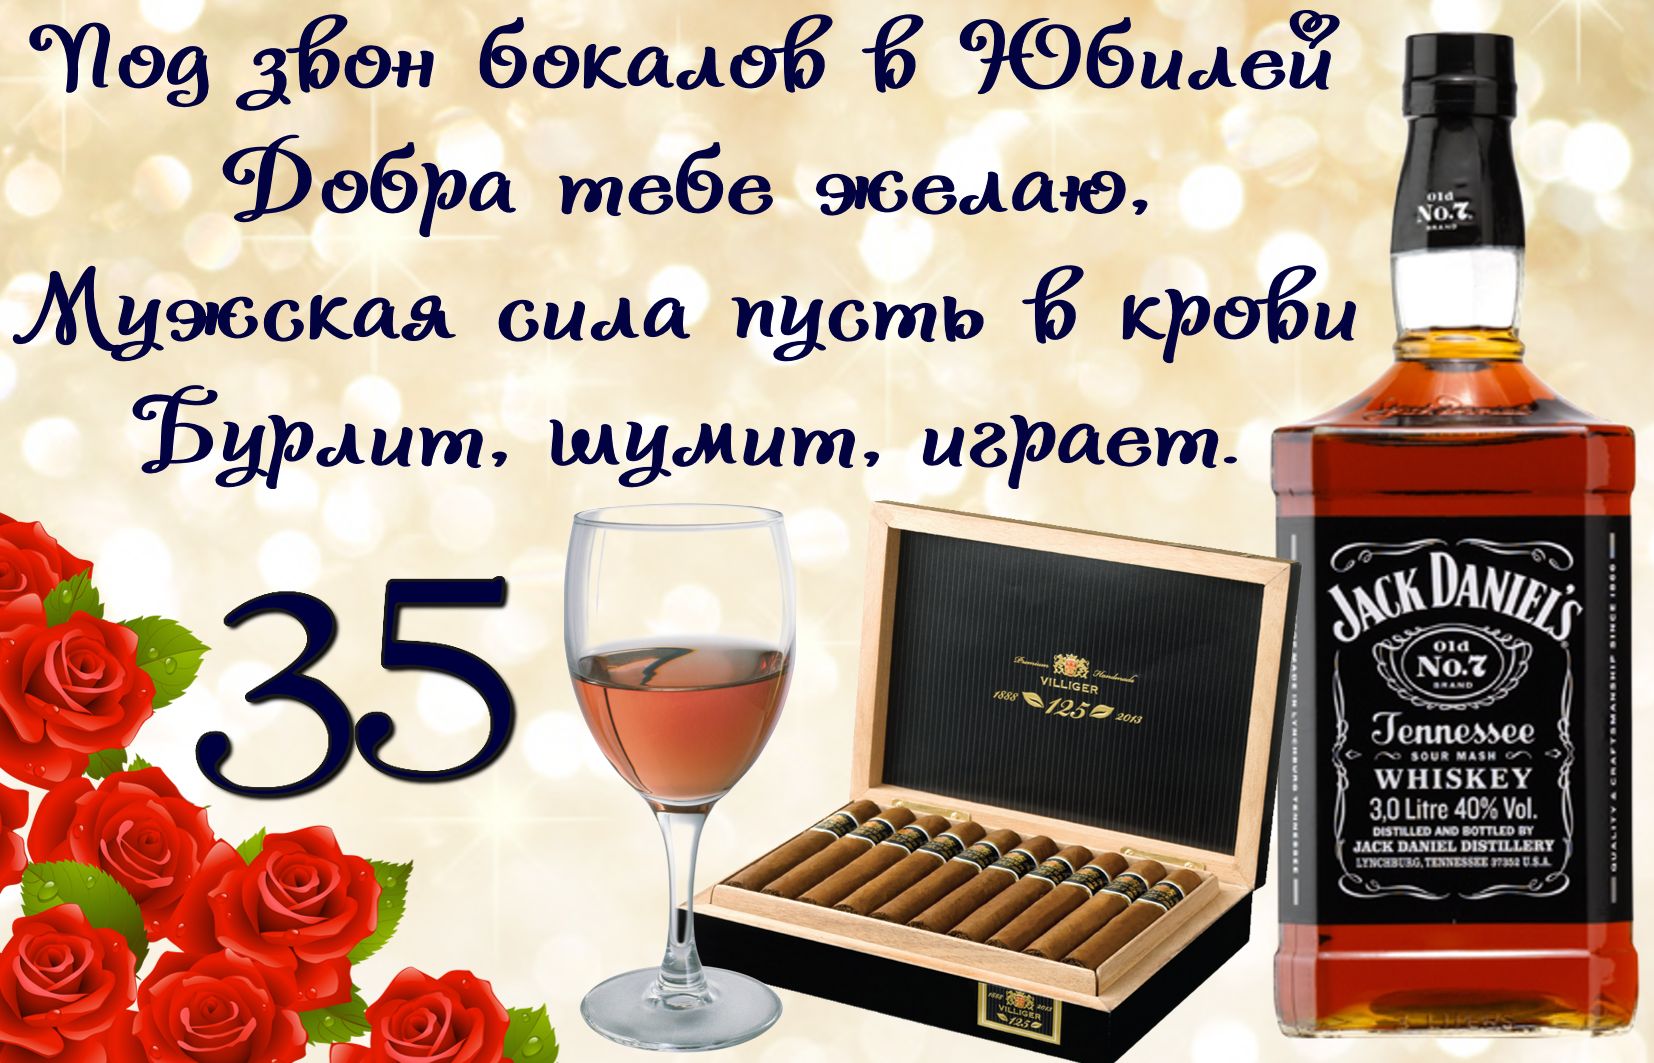 Открытка на 35 лет - пожелание к юбилею с виски и сигарами